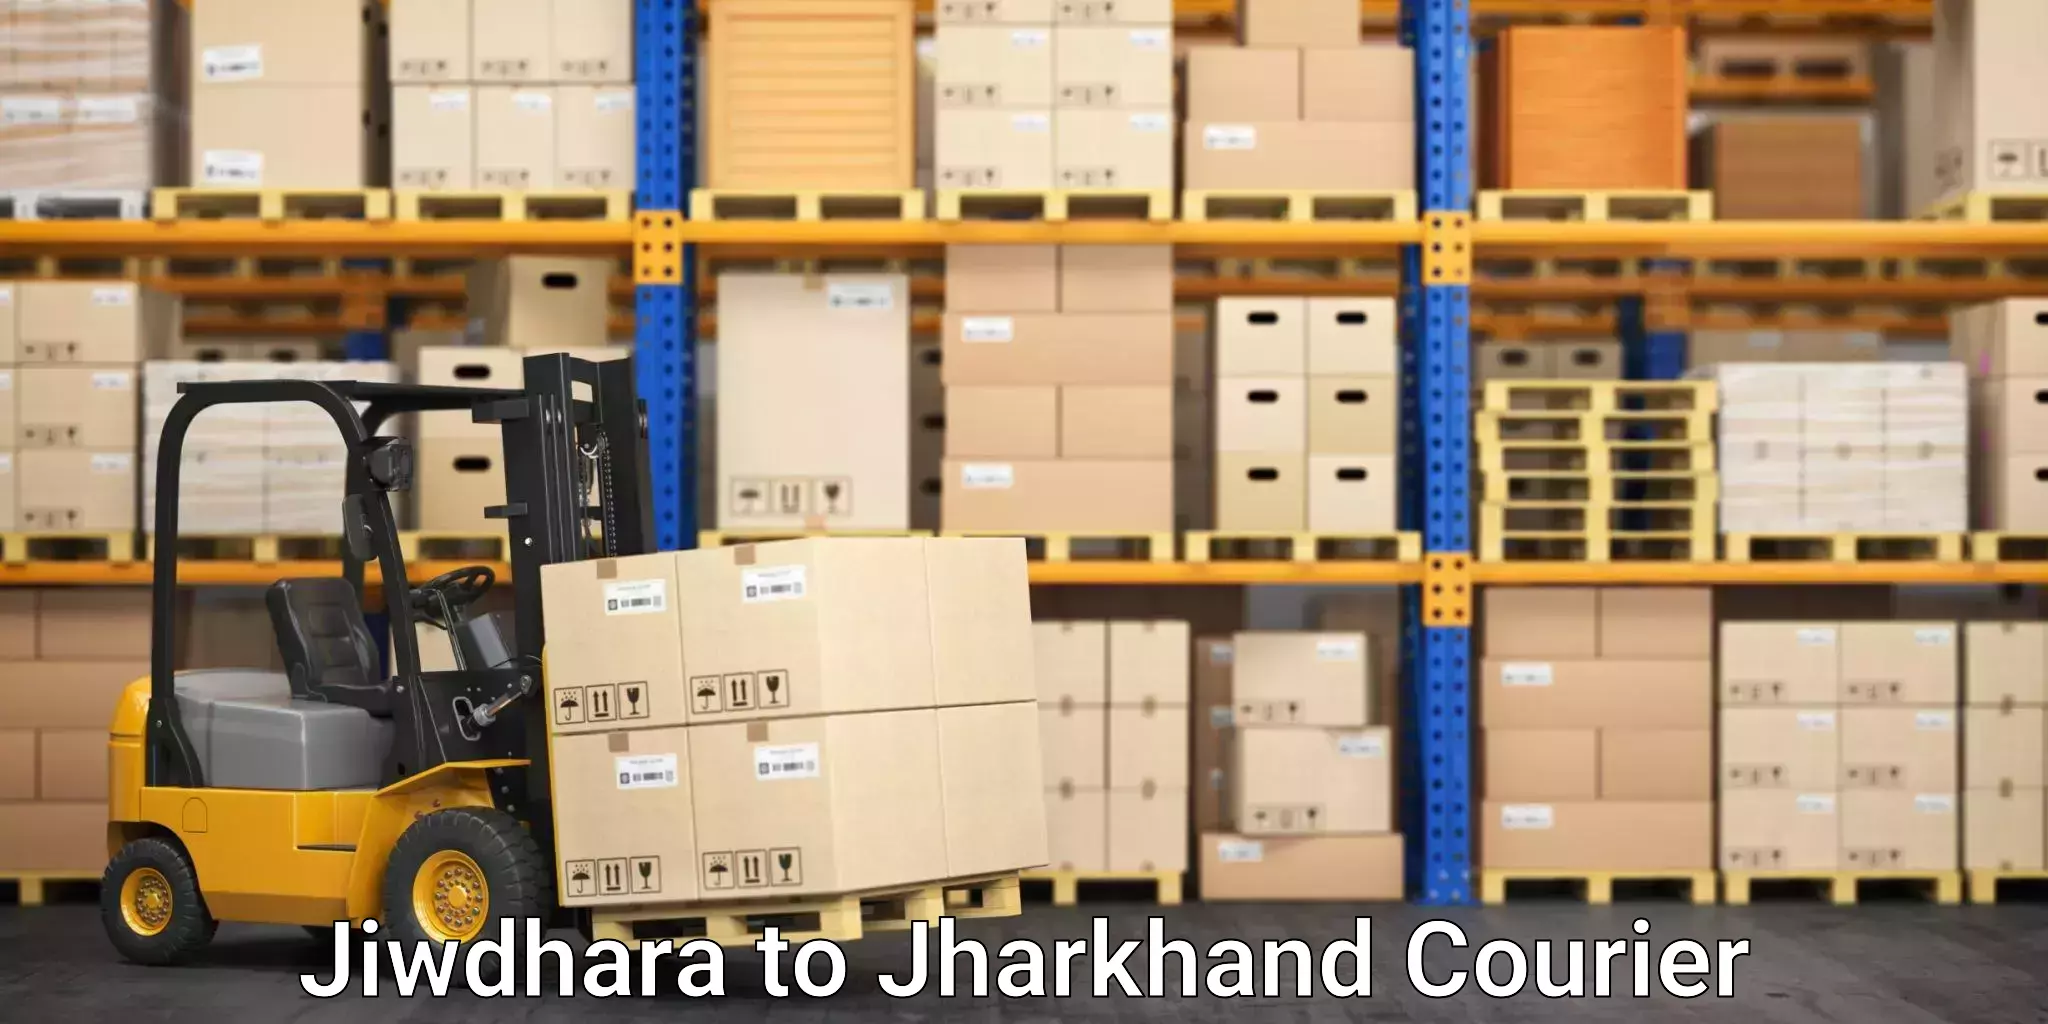 Full-service movers Jiwdhara to Nirsa